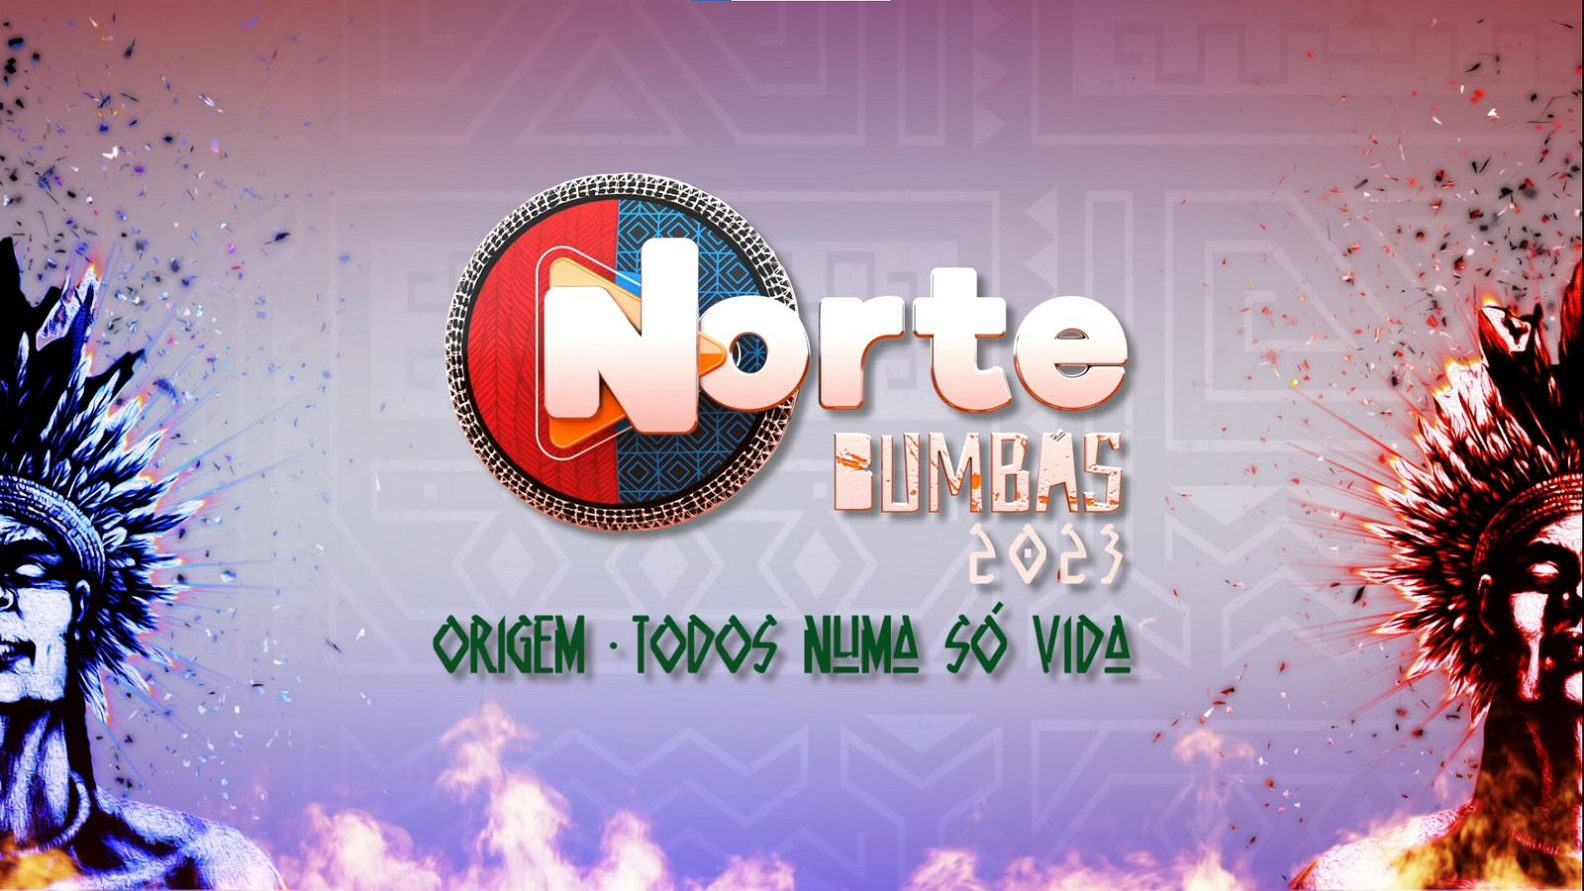 Festival Norte Bumbás realiza ensaio final para evento em Manaus